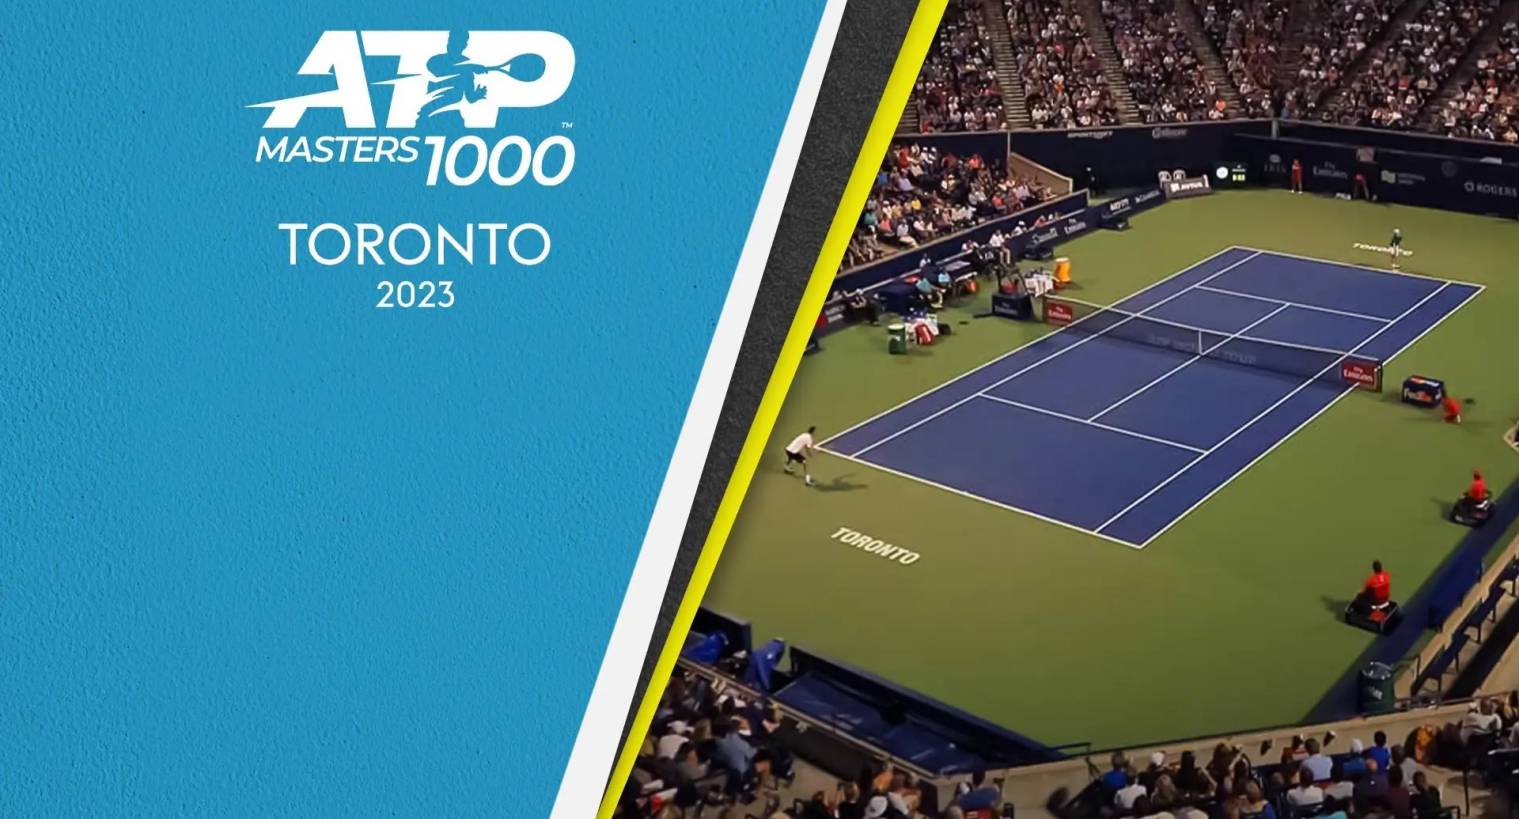 Atp Master 1000 Toronto 2023 su Sky e streaming live NOW con Alcaraz, Medvedev e Sinner